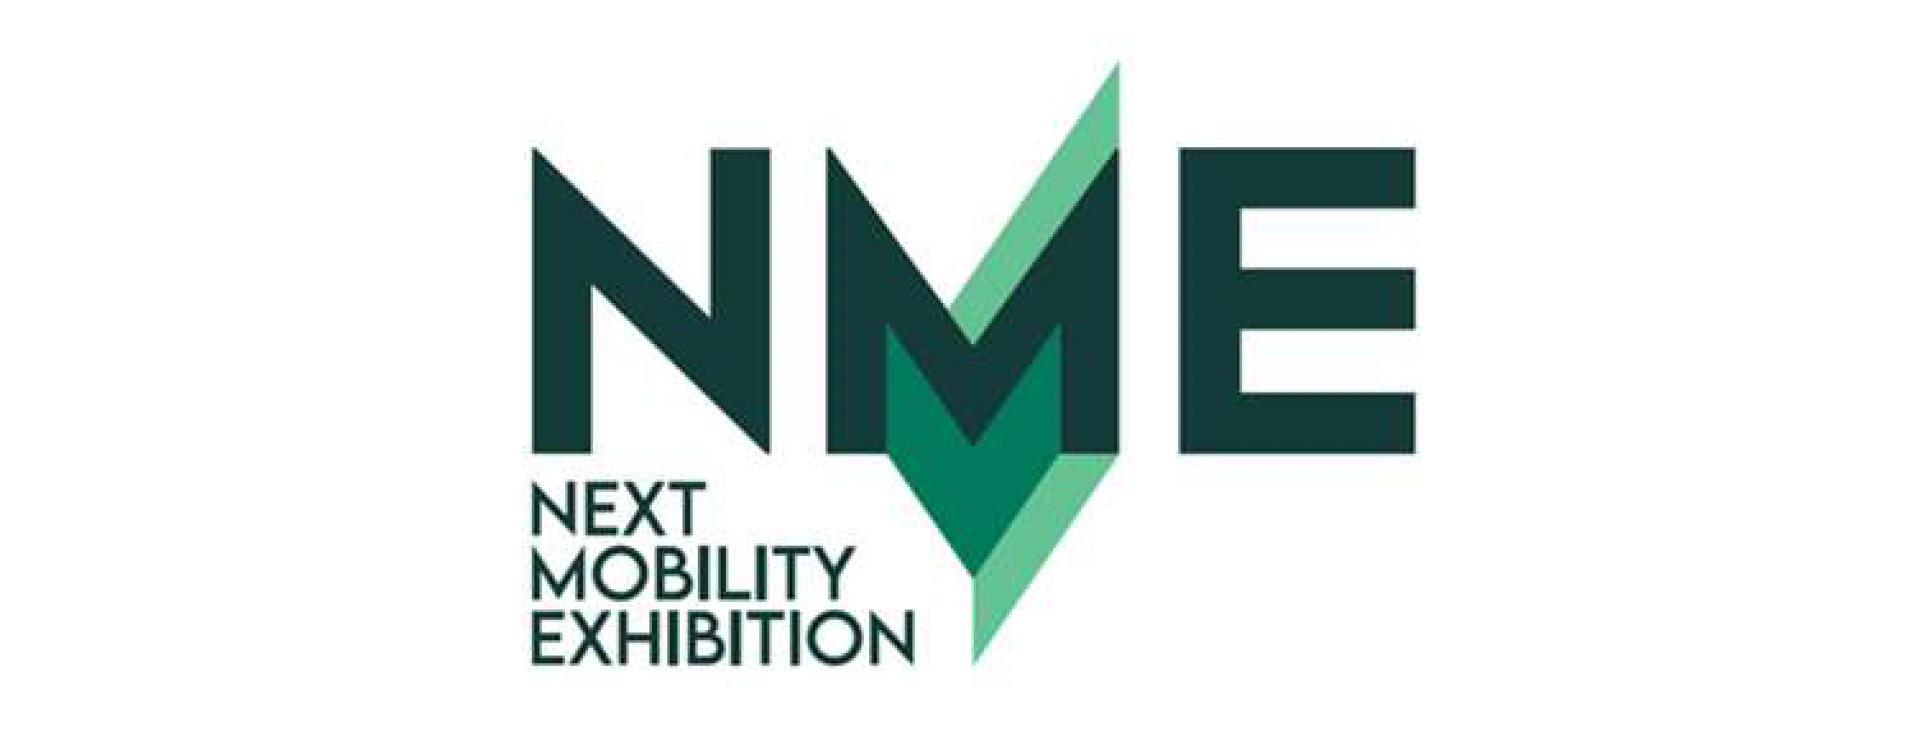 Next Mobility Exhibition milan